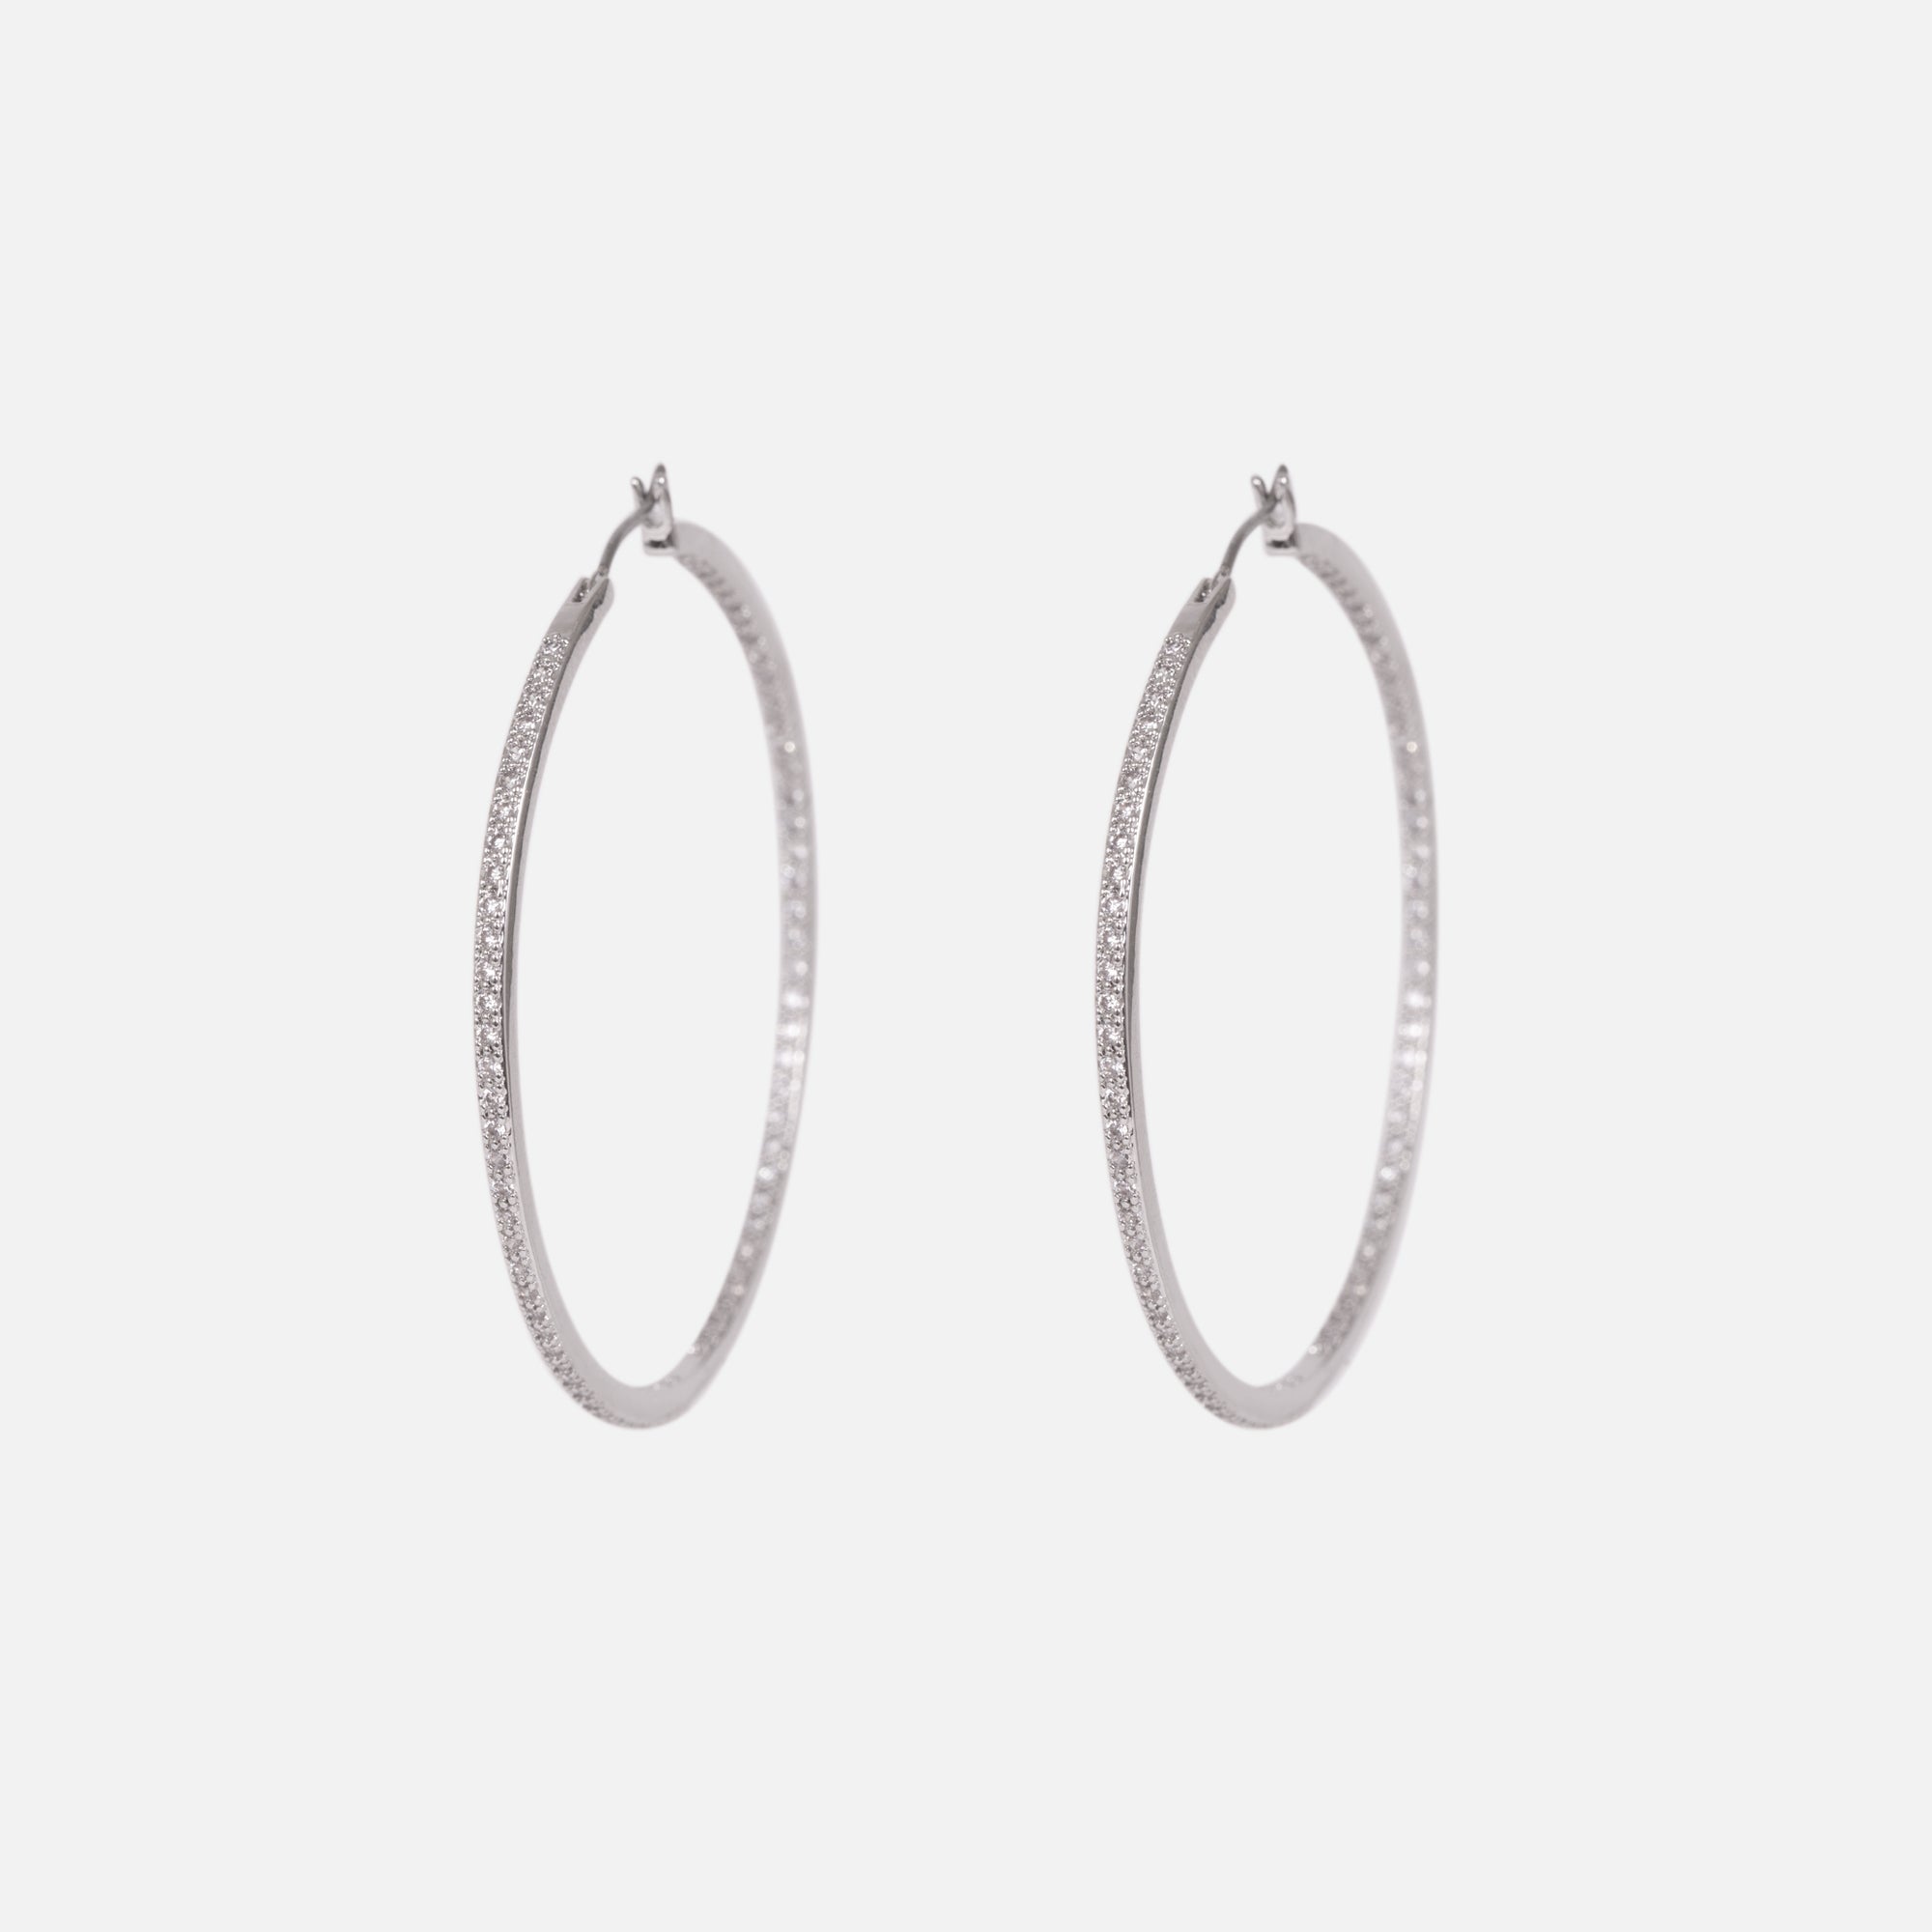 Silvered hoop earrings with stones